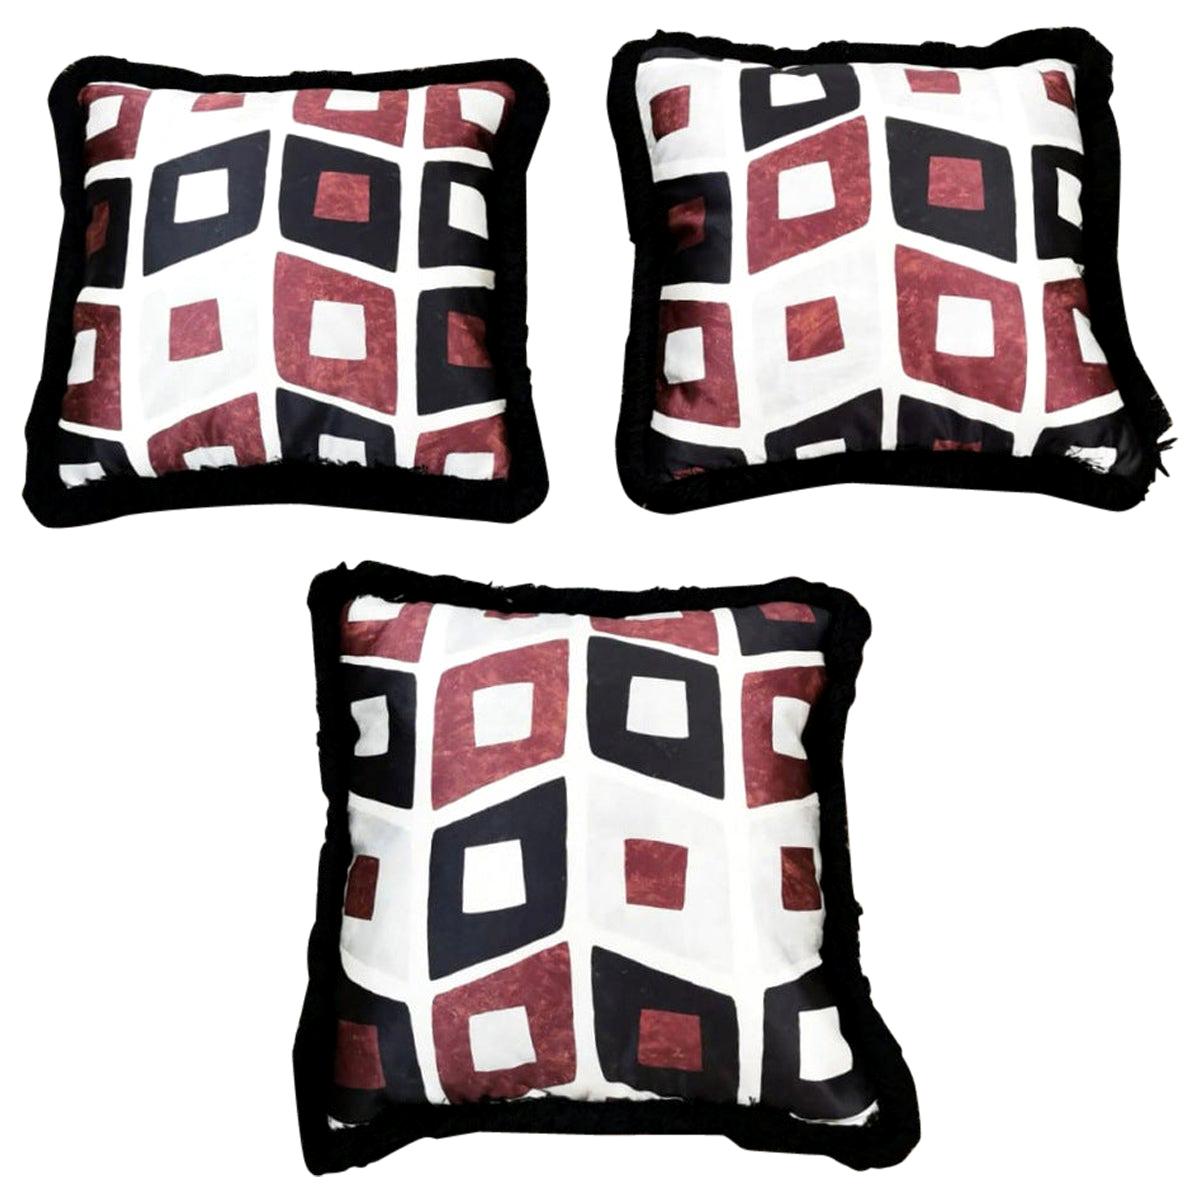 Italian Pillows Handmade in Dedar Satin Fabric and Velvet